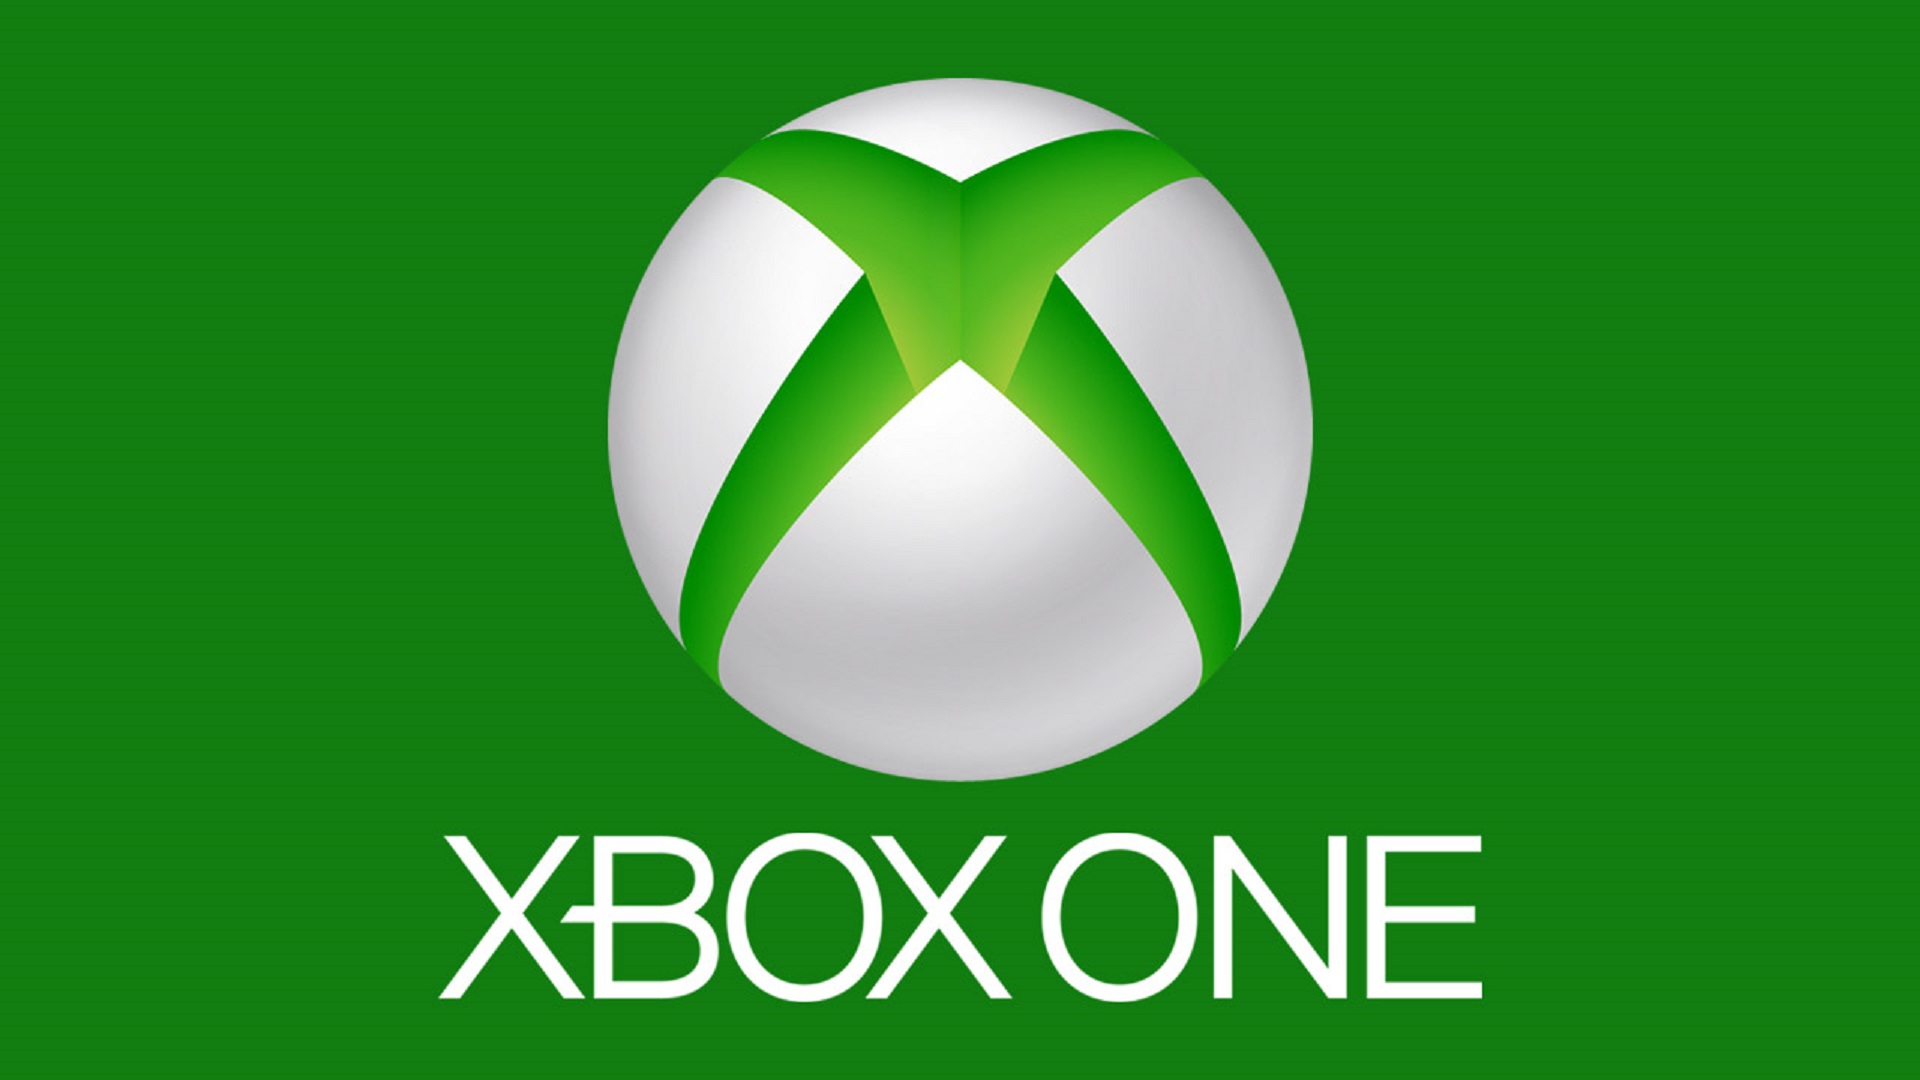 Xbox company. Значок Xbox. Xbox one лого. Логотип Икс бокс. Аватарки Xbox.